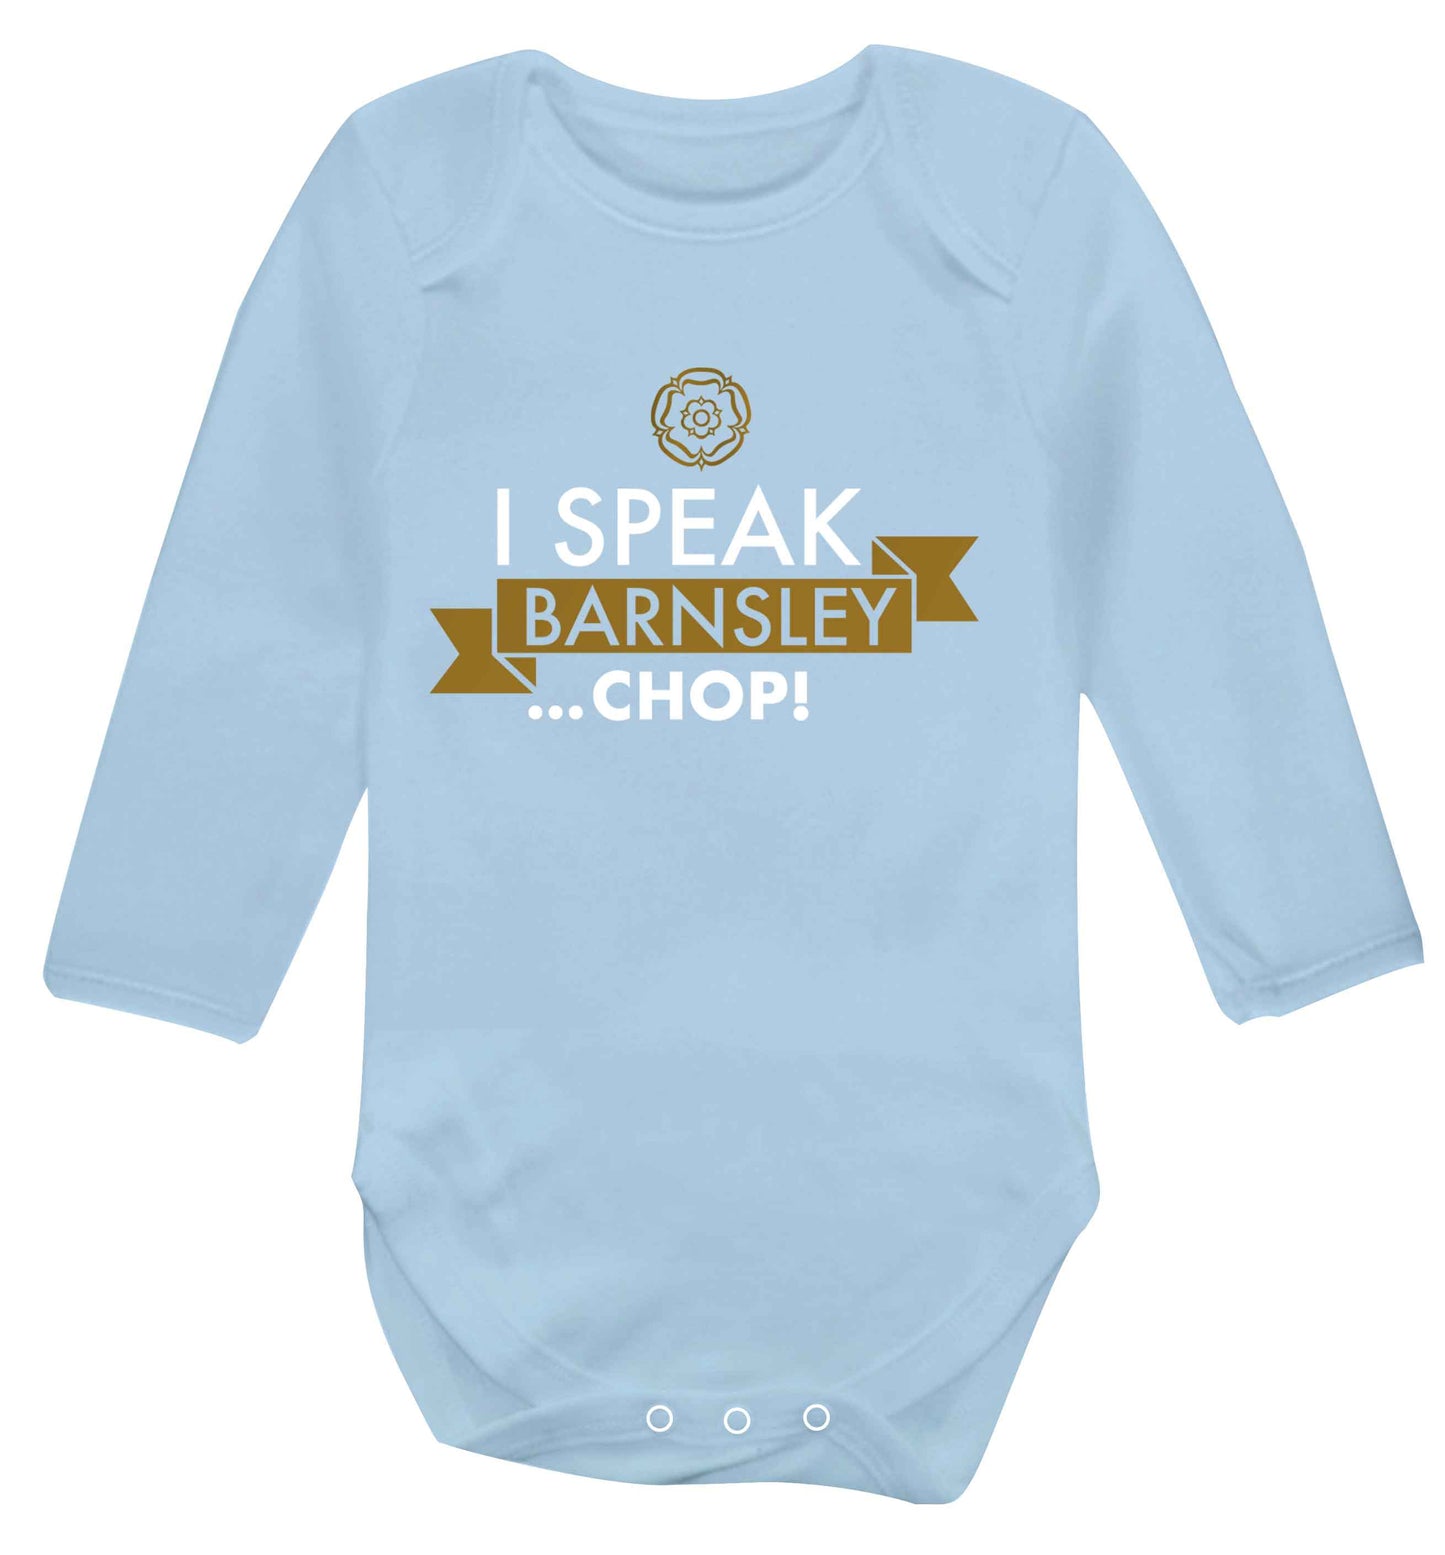 I speak Barnsley...chop! Baby Vest long sleeved pale blue 6-12 months